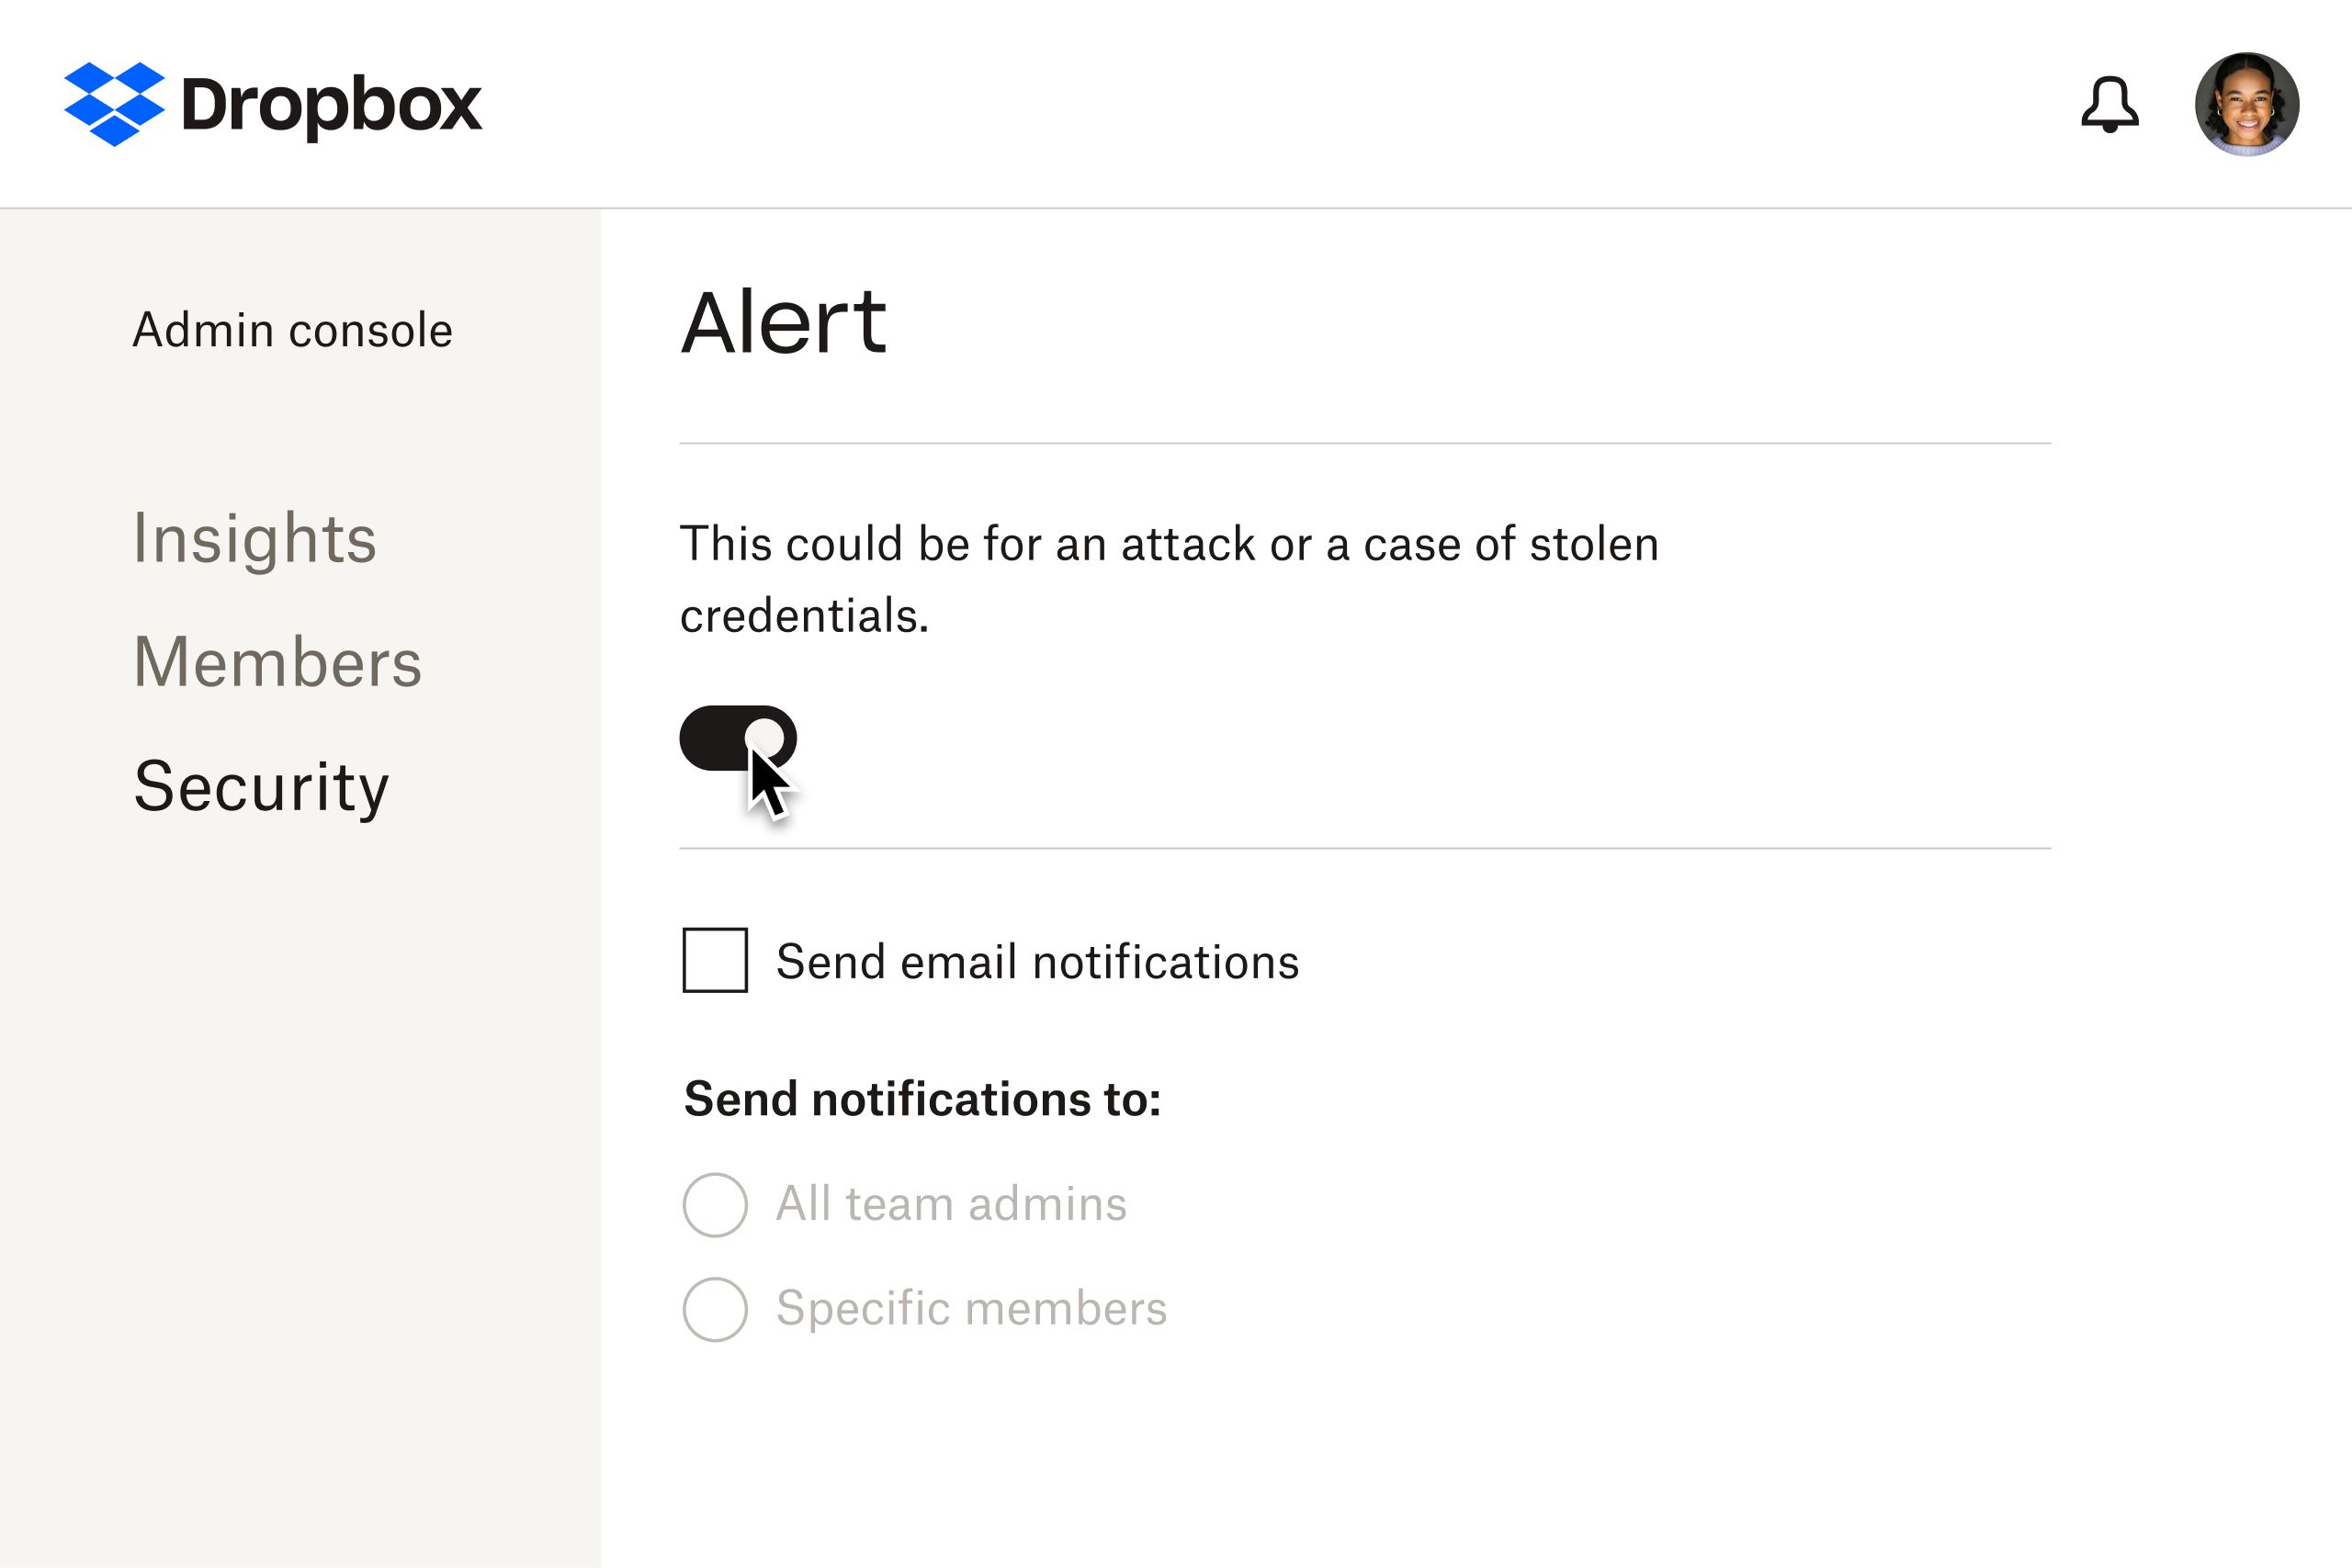 Uma imagem de exemplo das configurações de alerta disponíveis aos administradores no evento de uma possível violação de segurança.